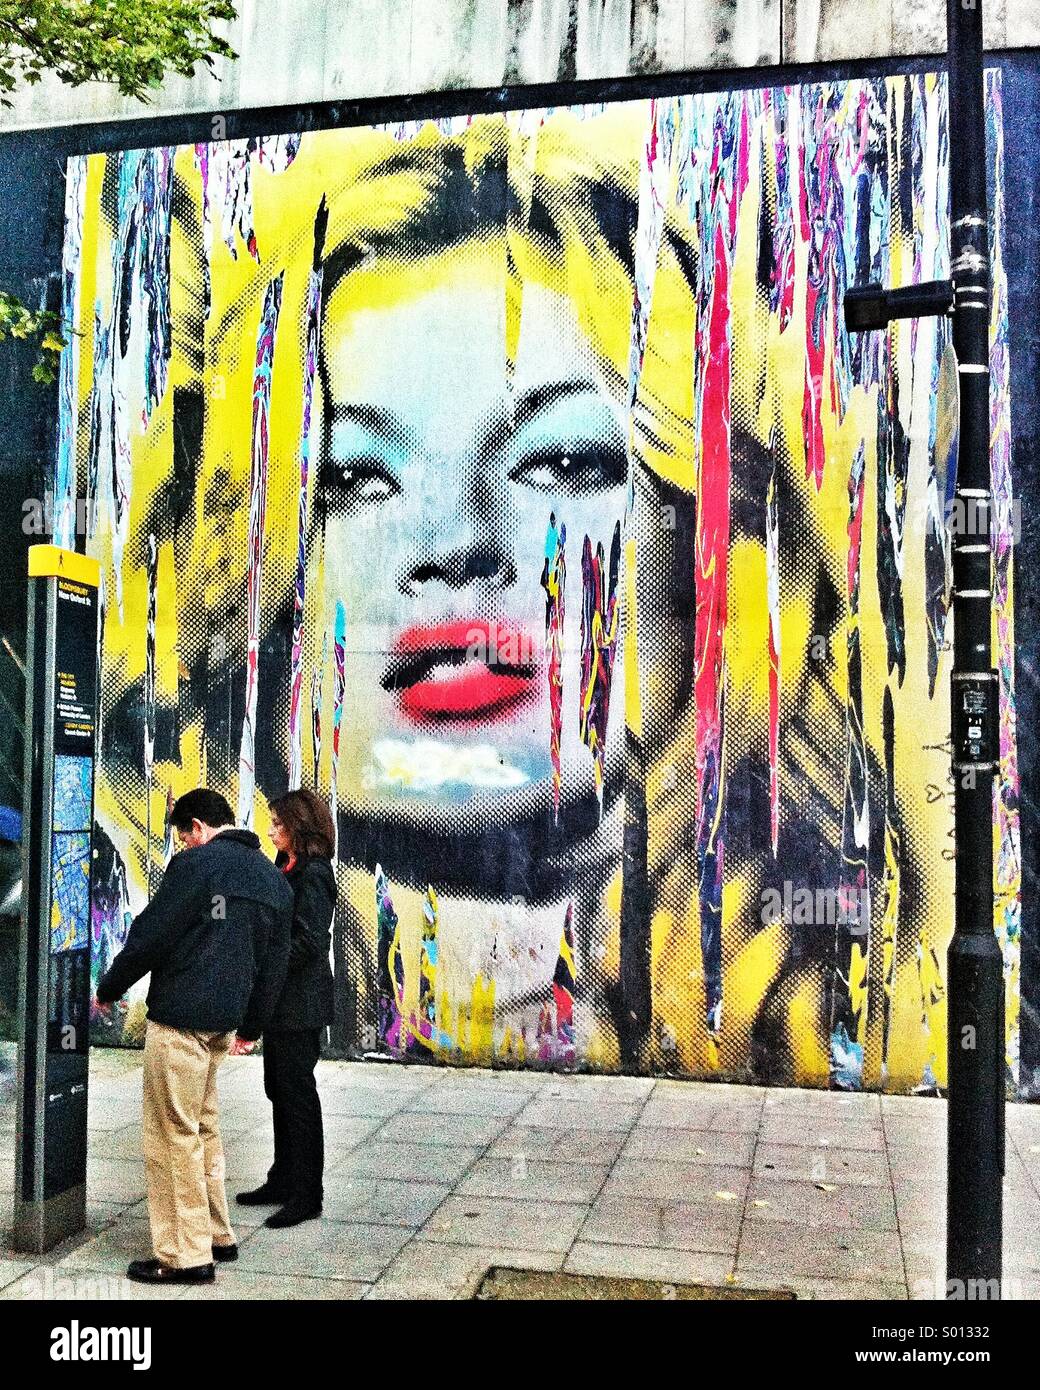 Un couple sont éclipsées par une pâte de Kate Moss, de modèle par artiste de rue, Mr Brainwash (Thierry Guetta). Le travail a été collé à l'extérieur de l'ancien bureau de tri dans le cadre de l'artiste solo show. Banque D'Images